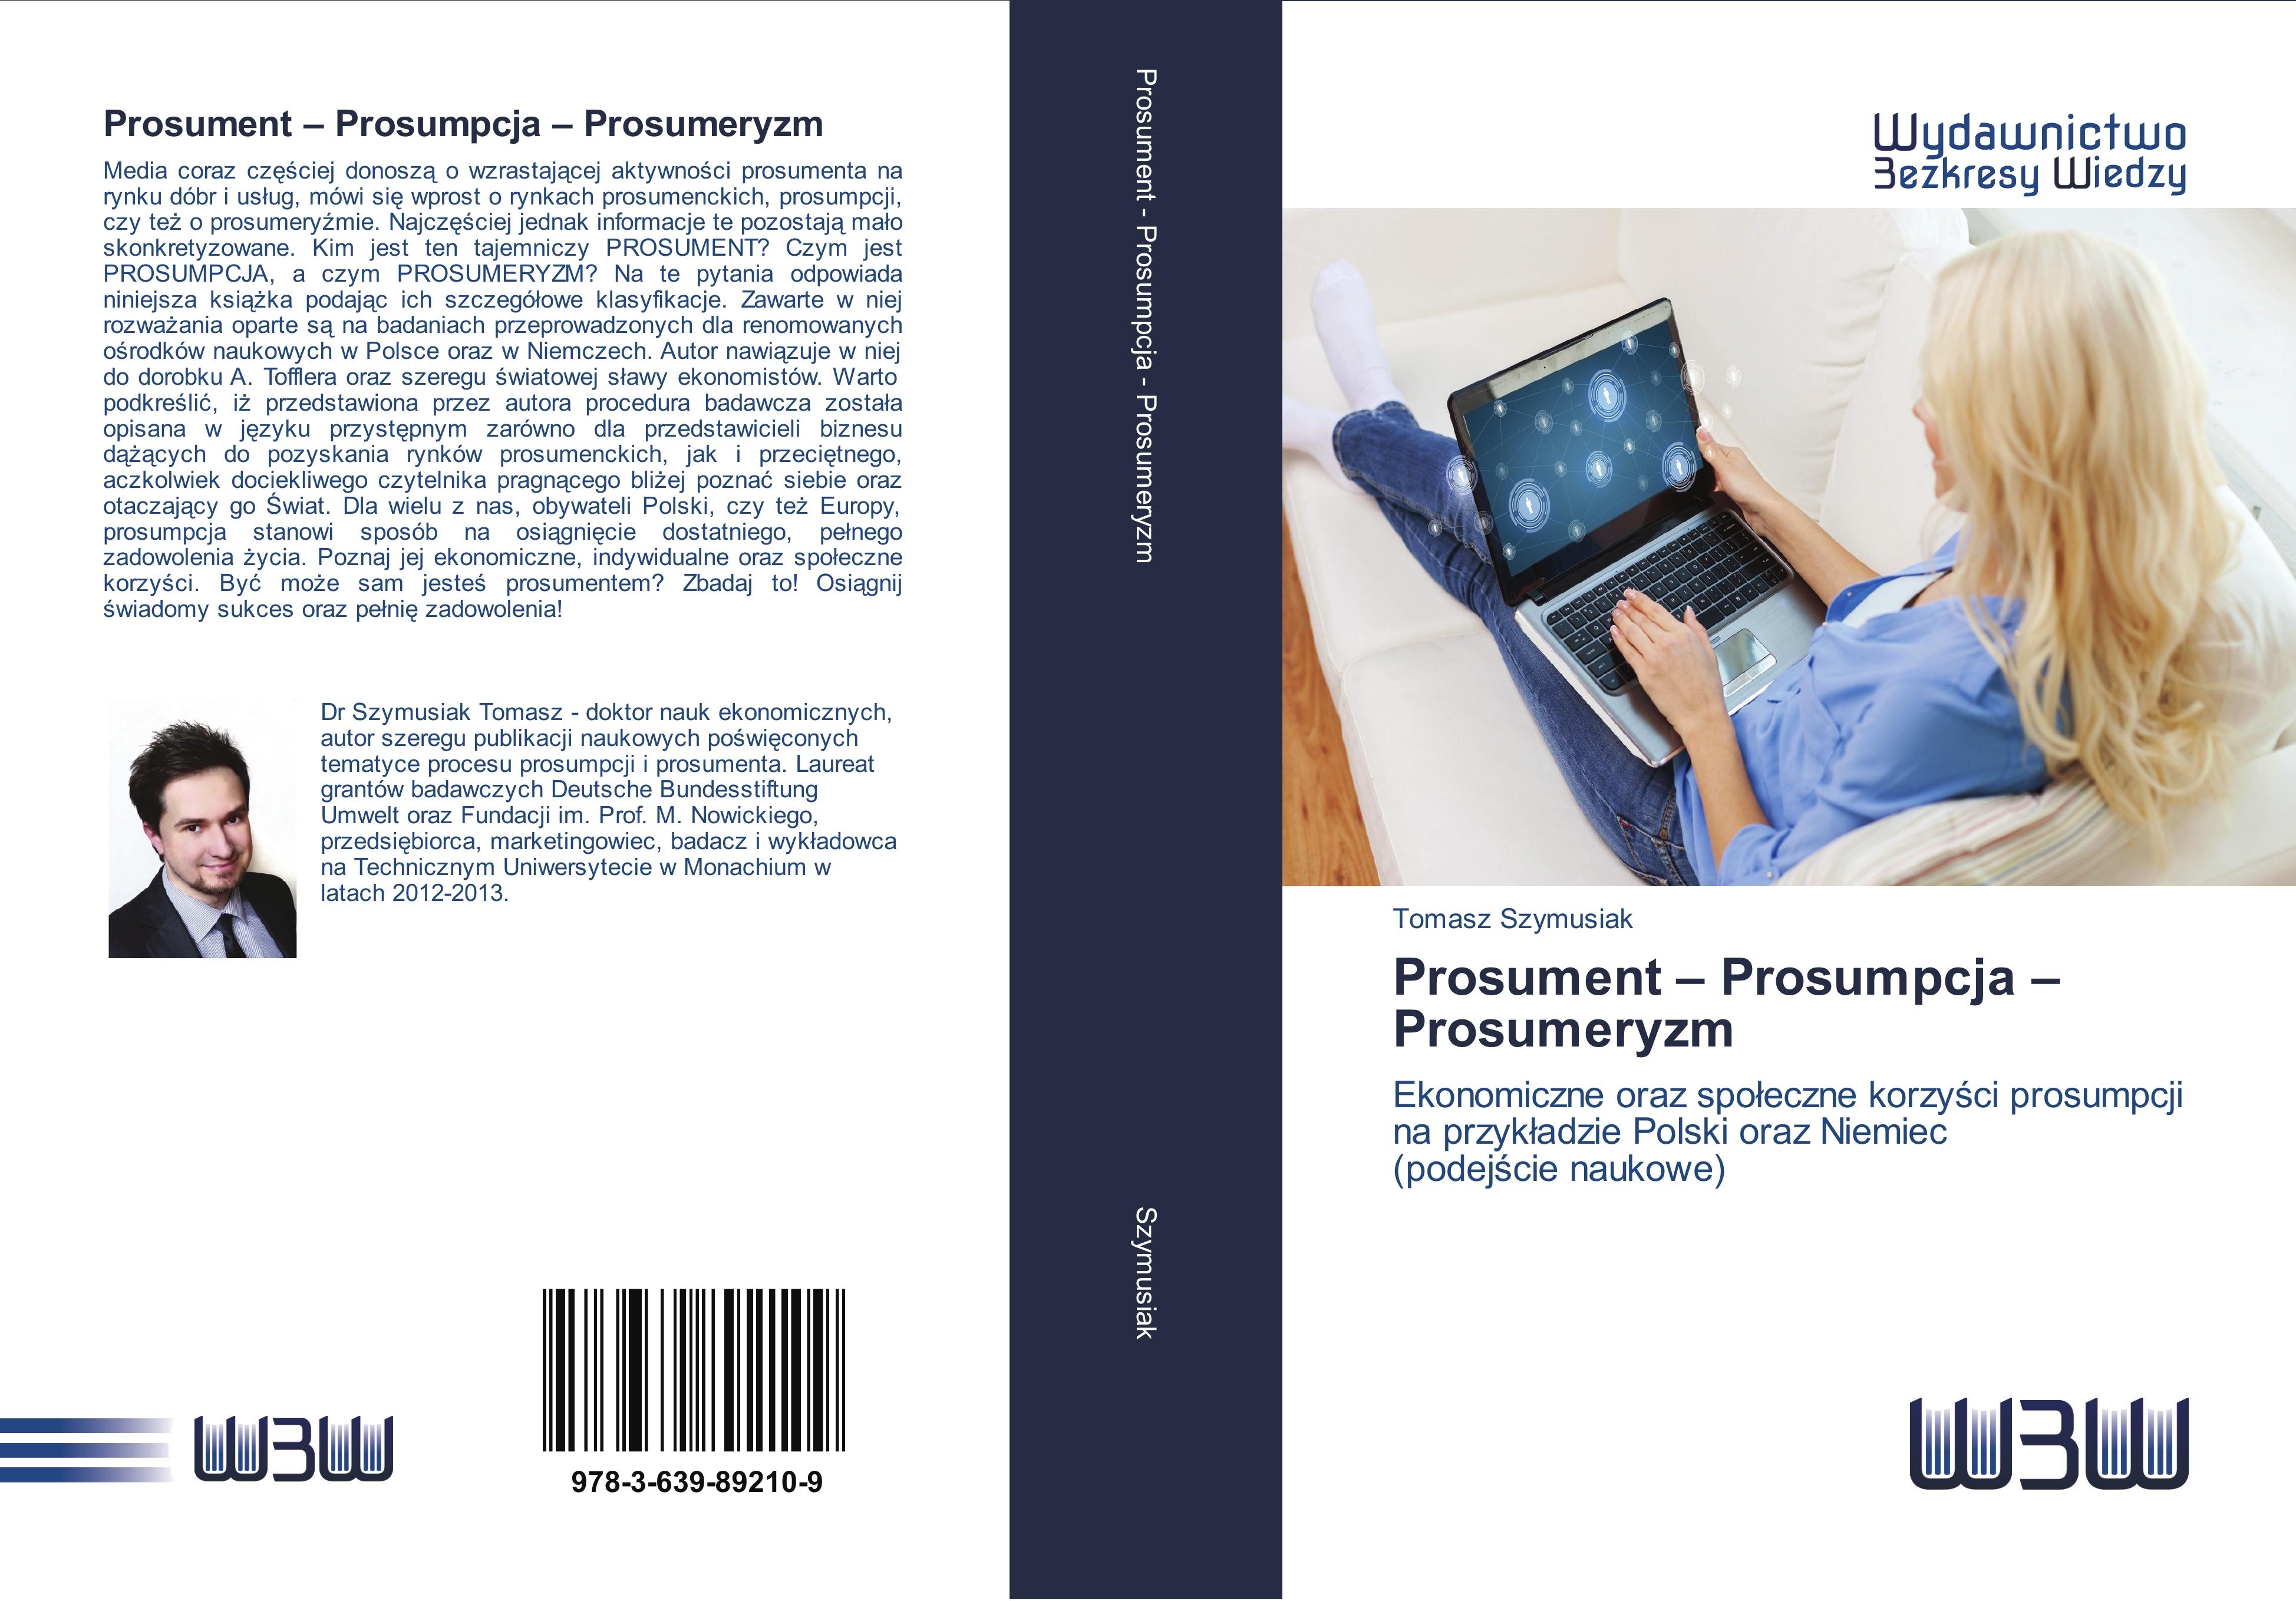 Prosument - Prosumpcja - Prosumeryzm - Tomasz Szymusiak